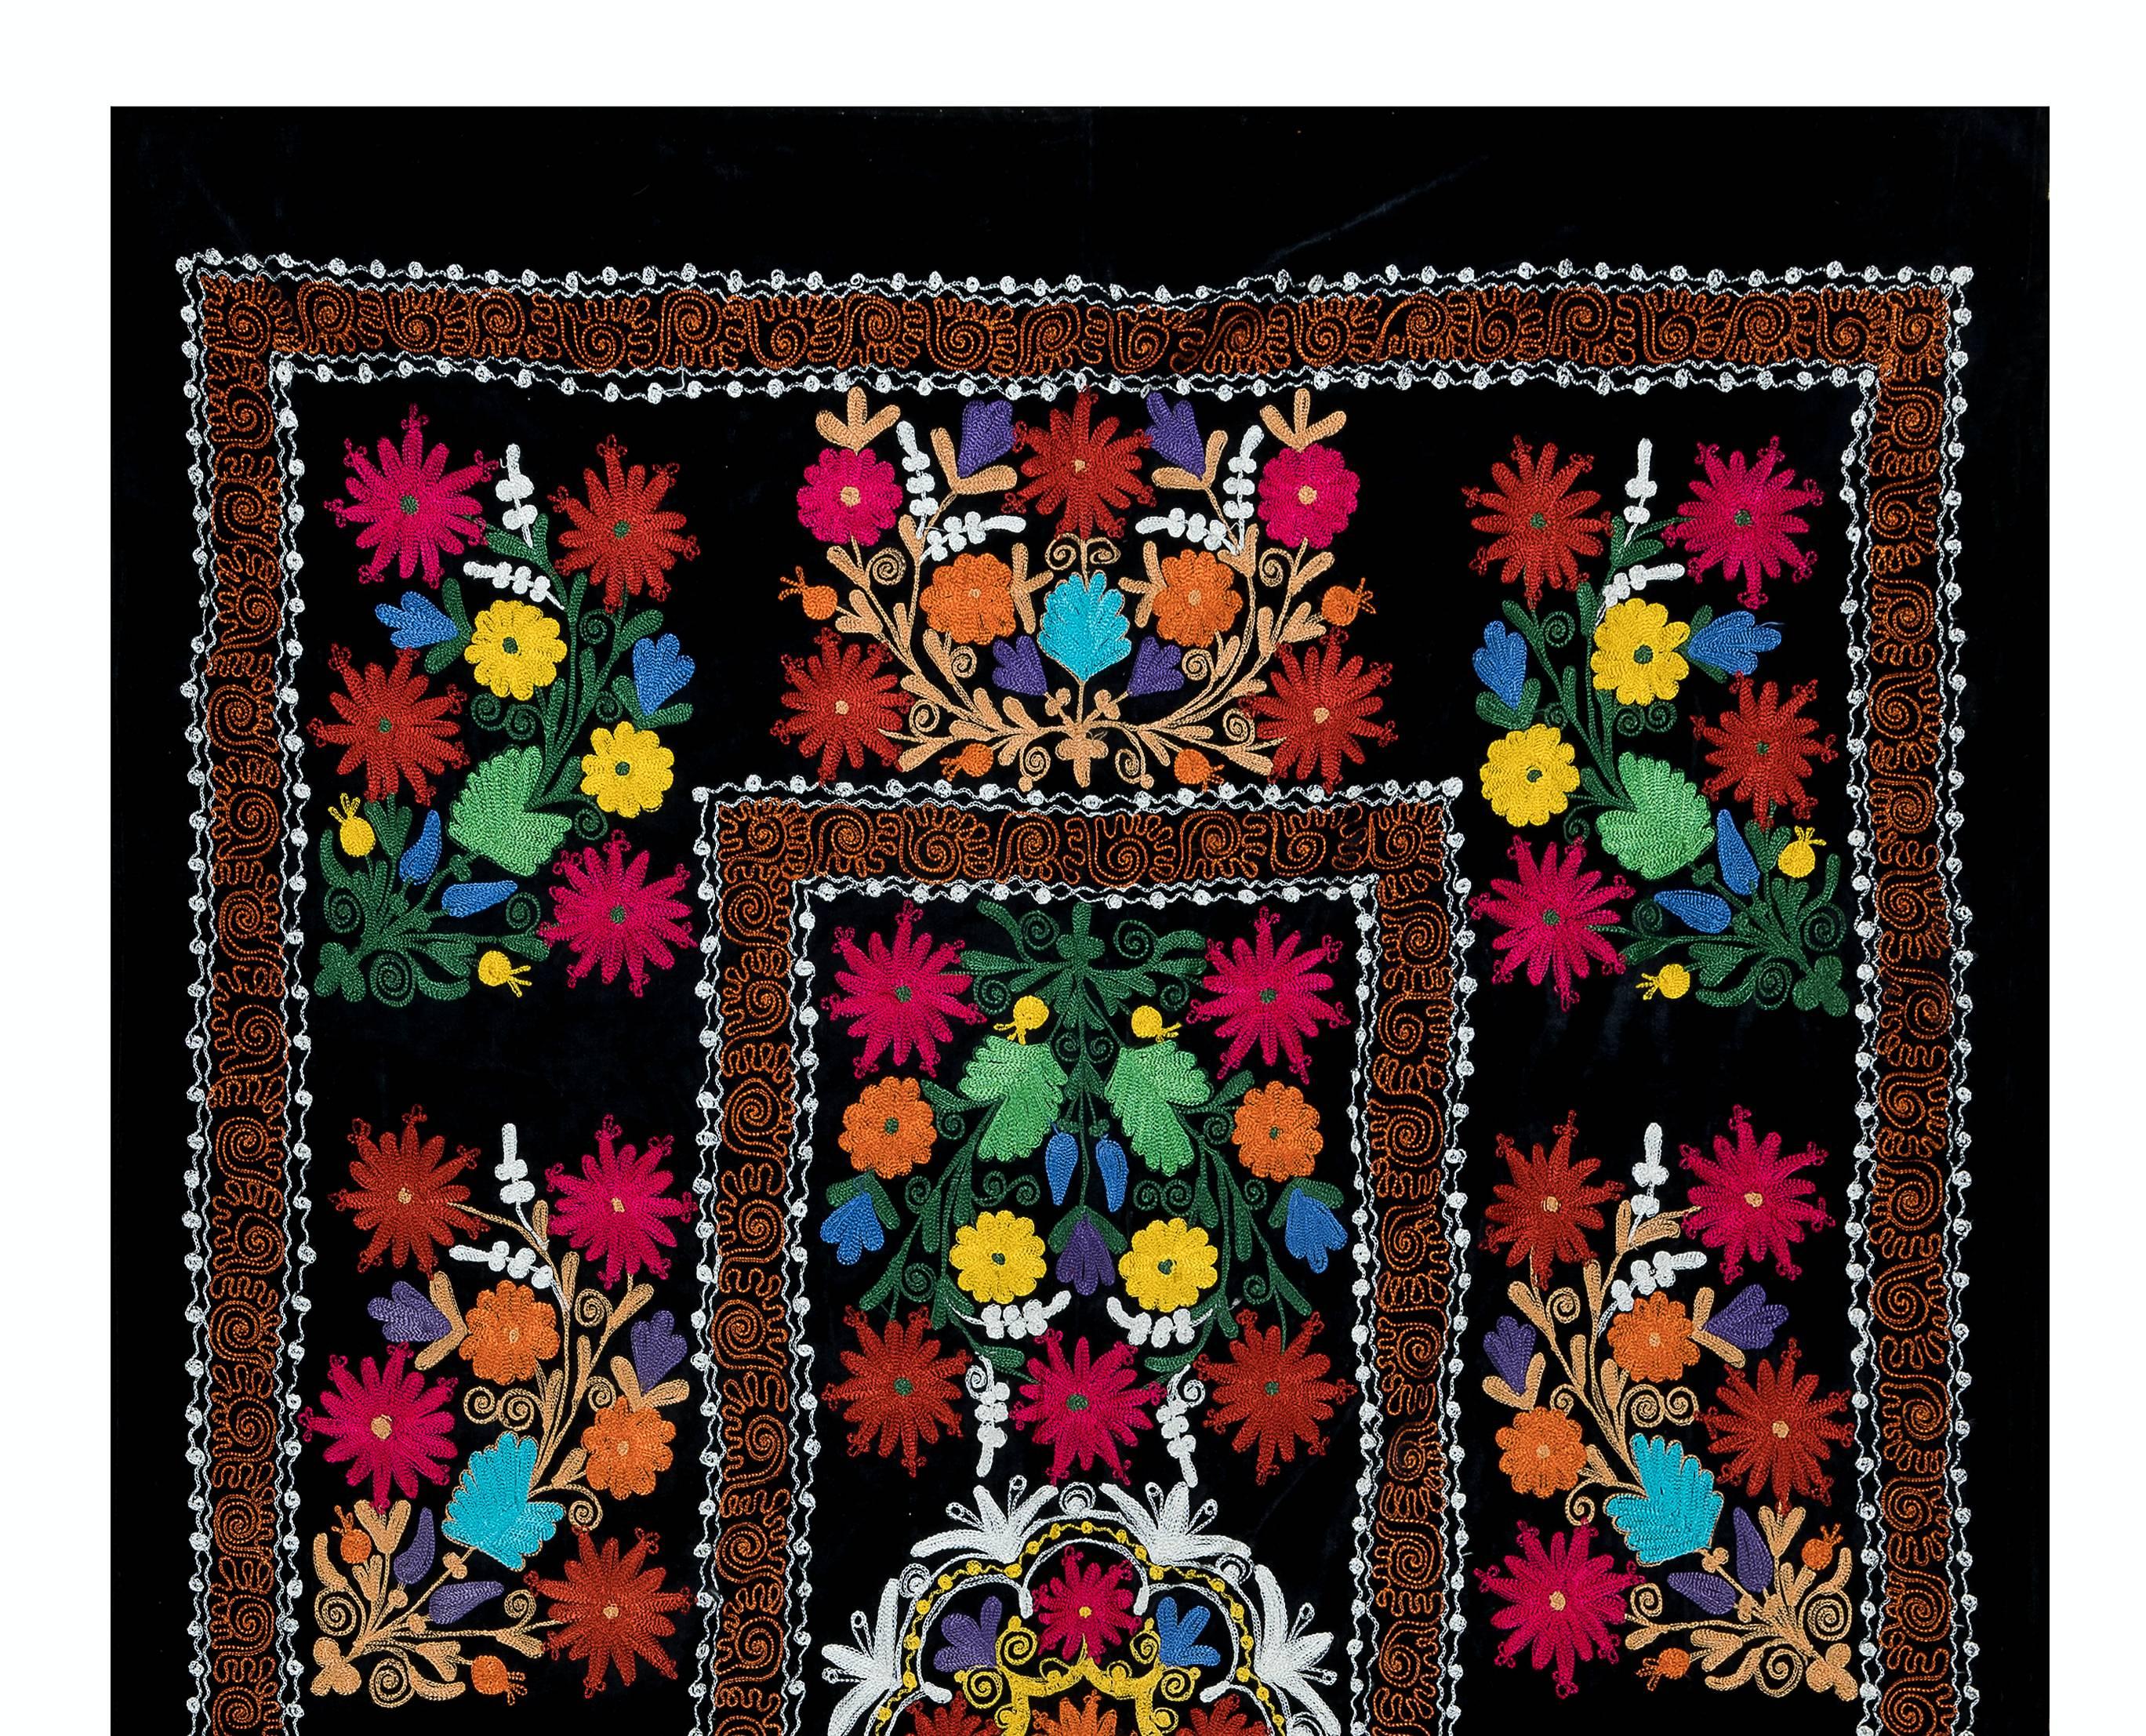 Suzani, terme d'Asie centrale désignant un type spécifique de travaux d'aiguille, est également le nom général des pièces textiles décoratives extrêmement populaires qui présentent ces travaux d'aiguille dans des couleurs vives, avec des motifs